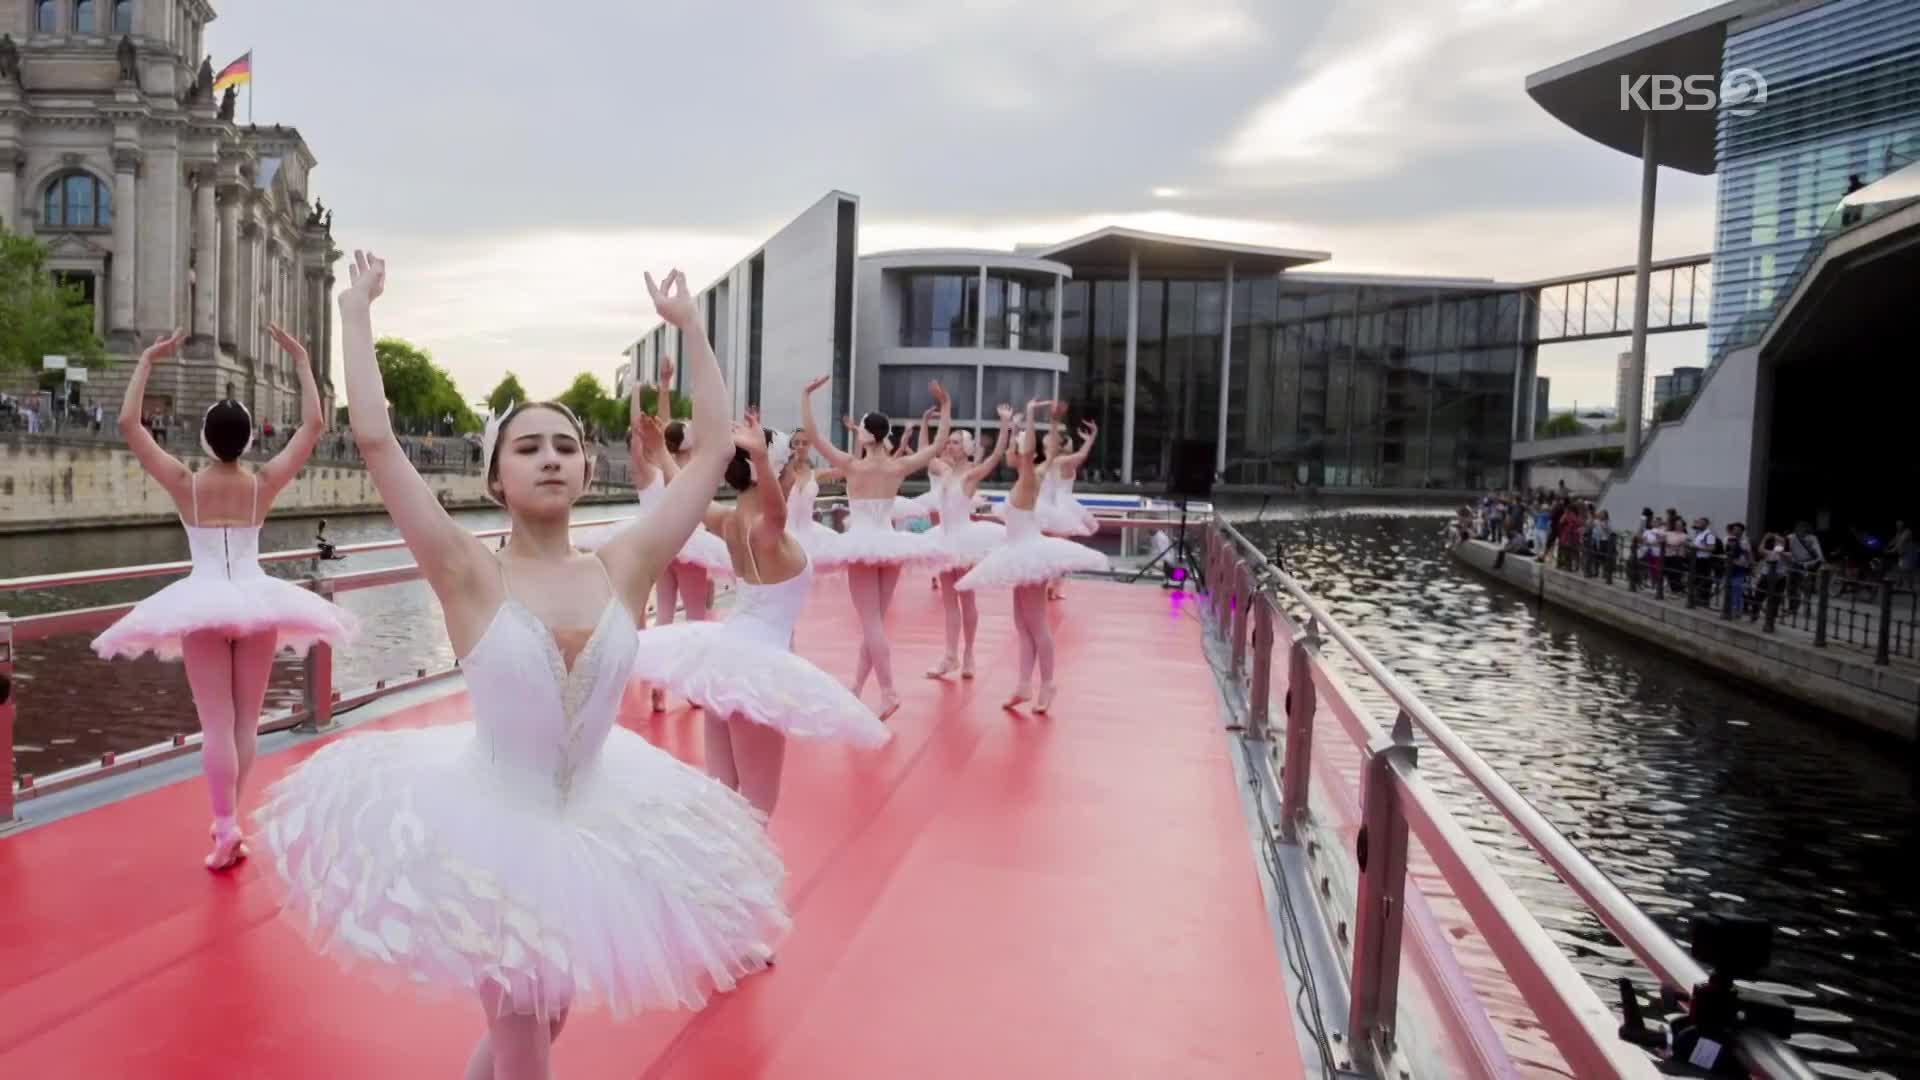 [지구촌 포토] 코로나19 시대의 예술…베를린의 영화 축제와 발레 공연